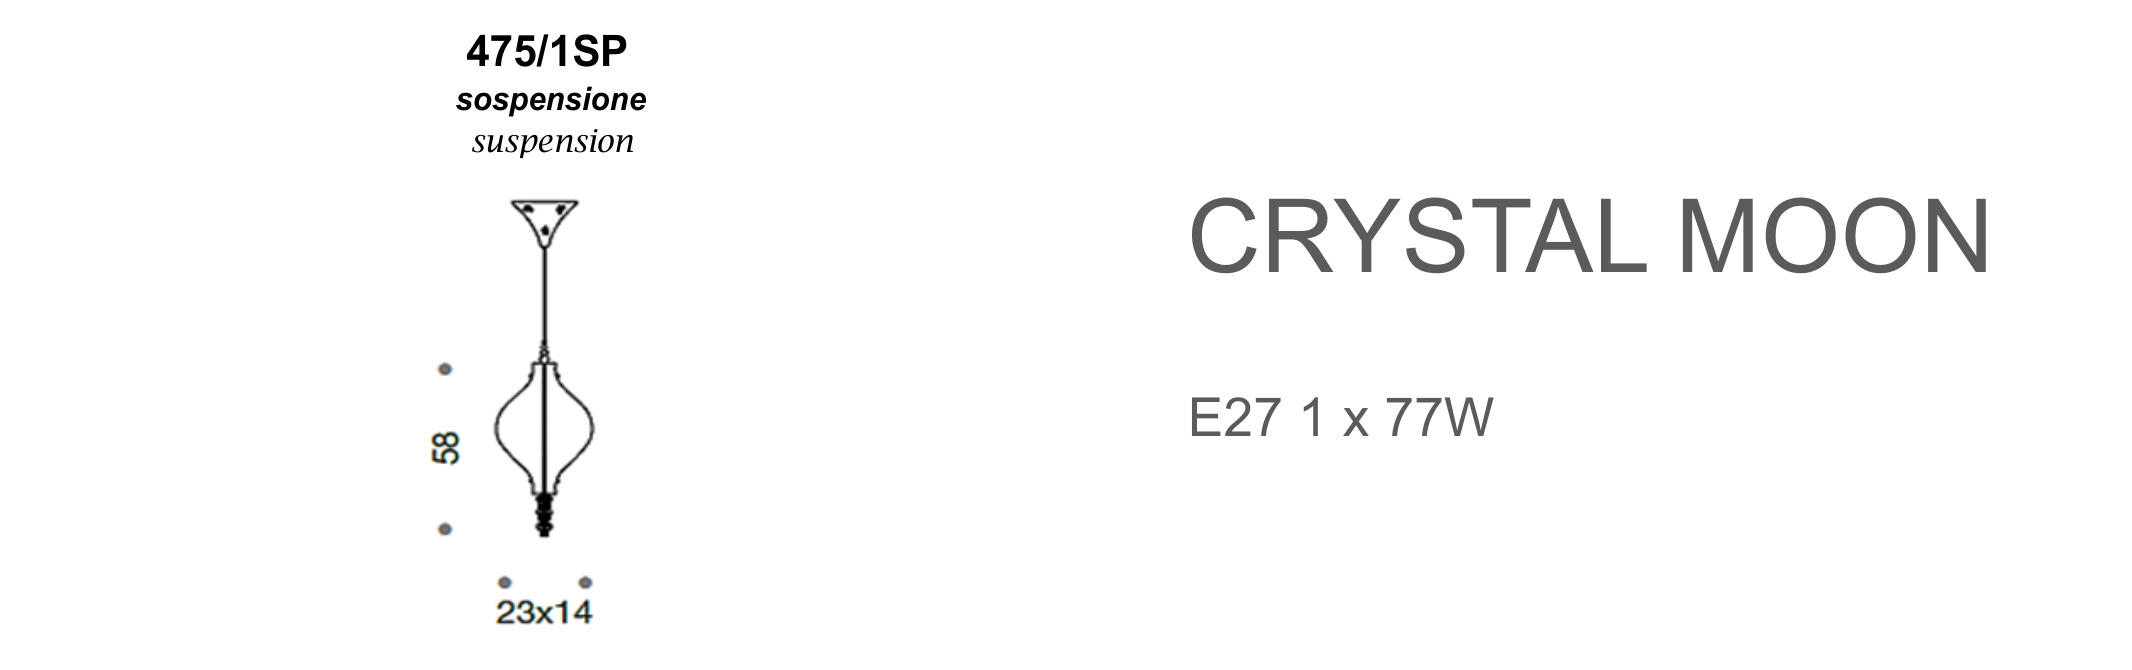 Crystal Moon 475/1SP